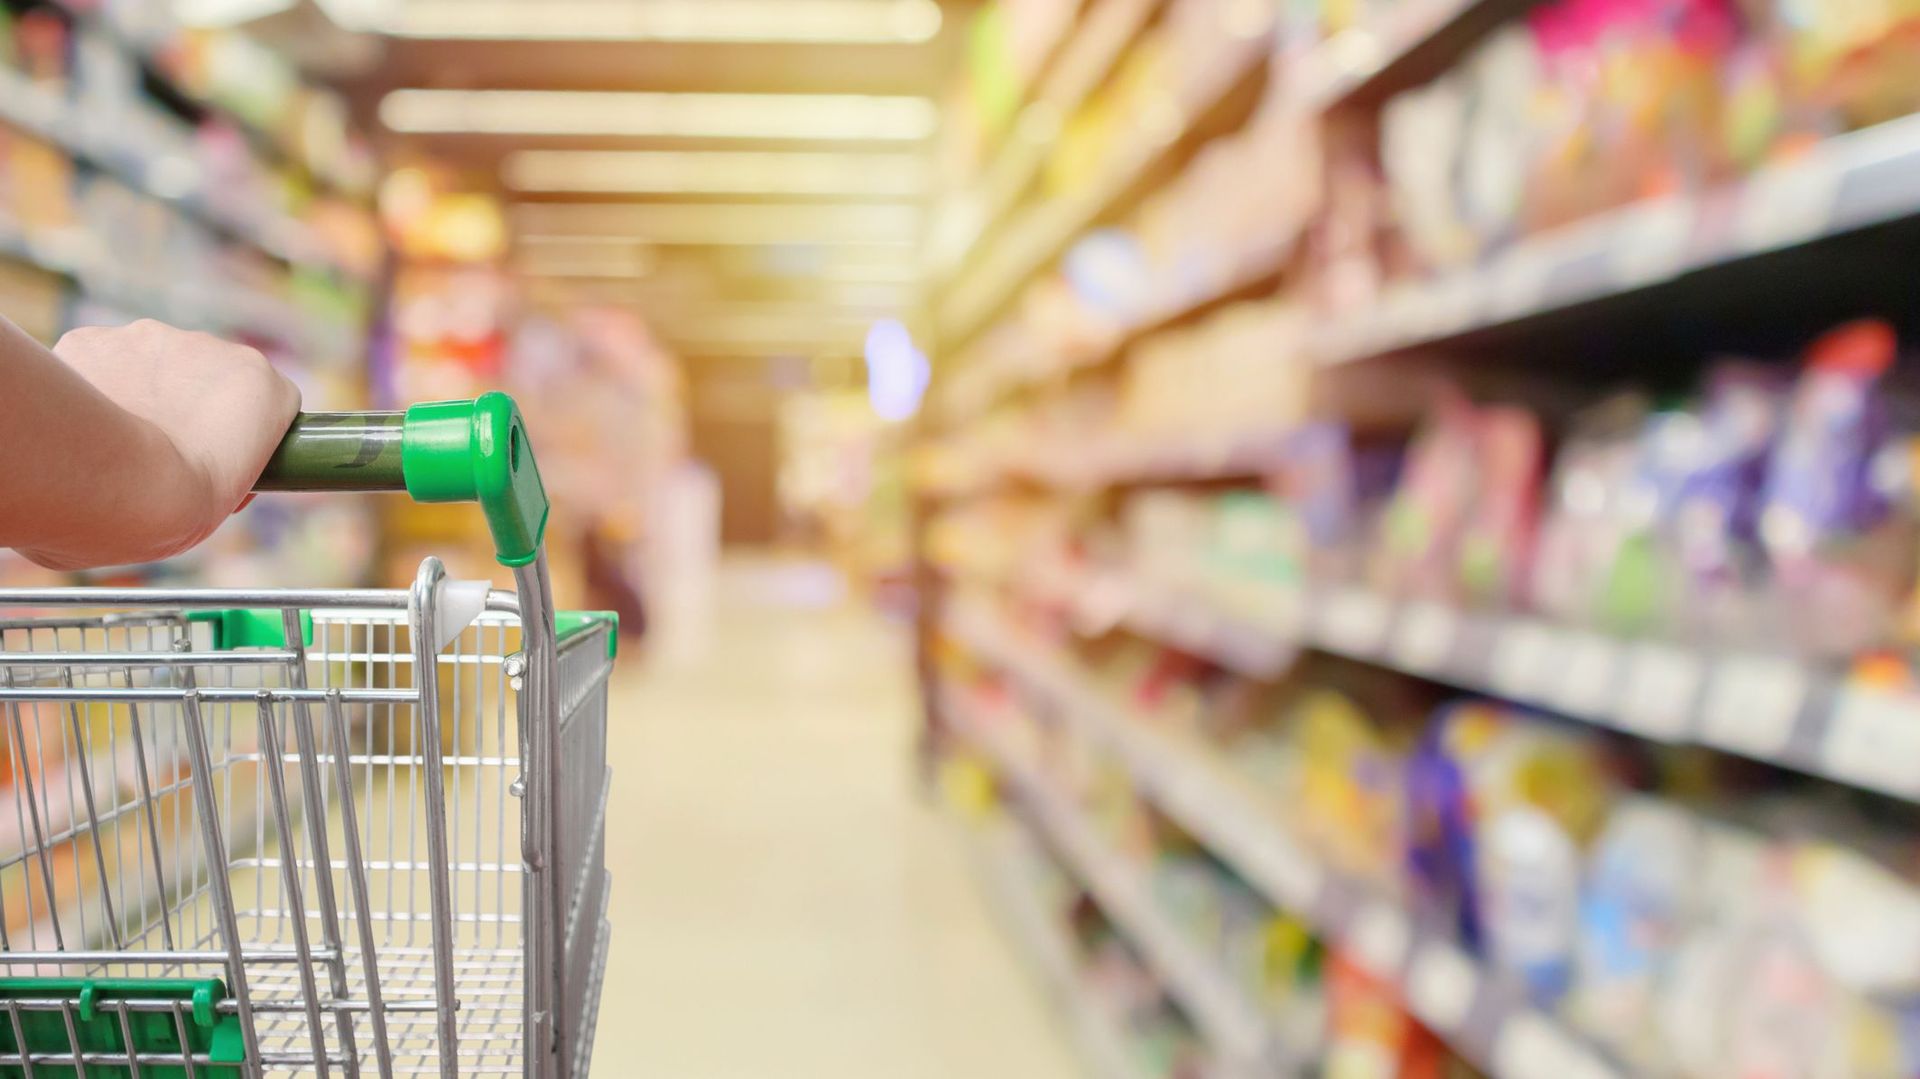 Allons-nous vers une nouvelle guerre des prix entre supermarchés ?